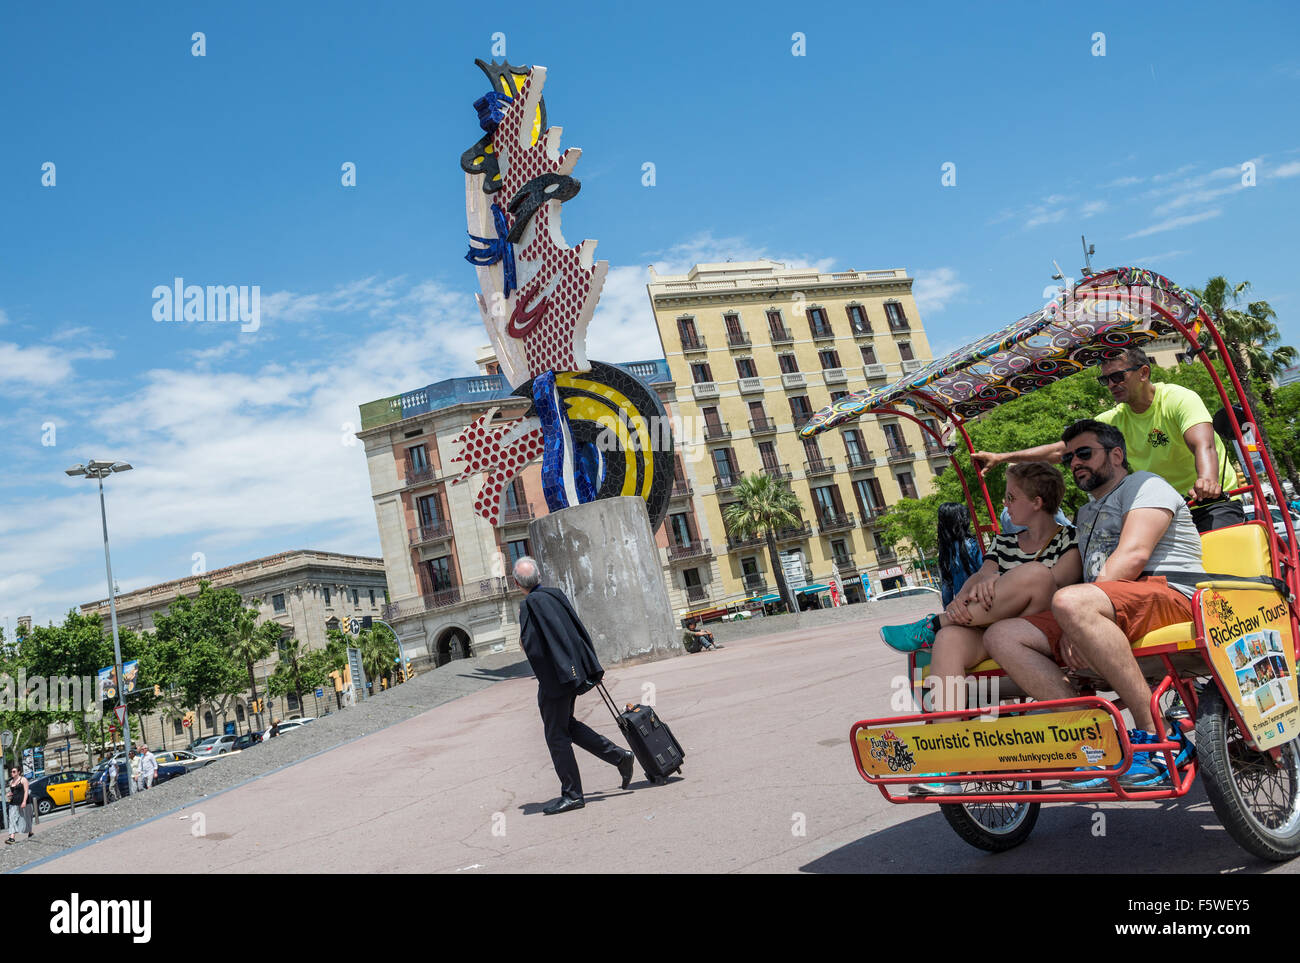 El Cap de Barcelone (la tête) surréalisme sculpture de l'artiste américain Roy Lichtenstein à Barcelone, Espagne Banque D'Images